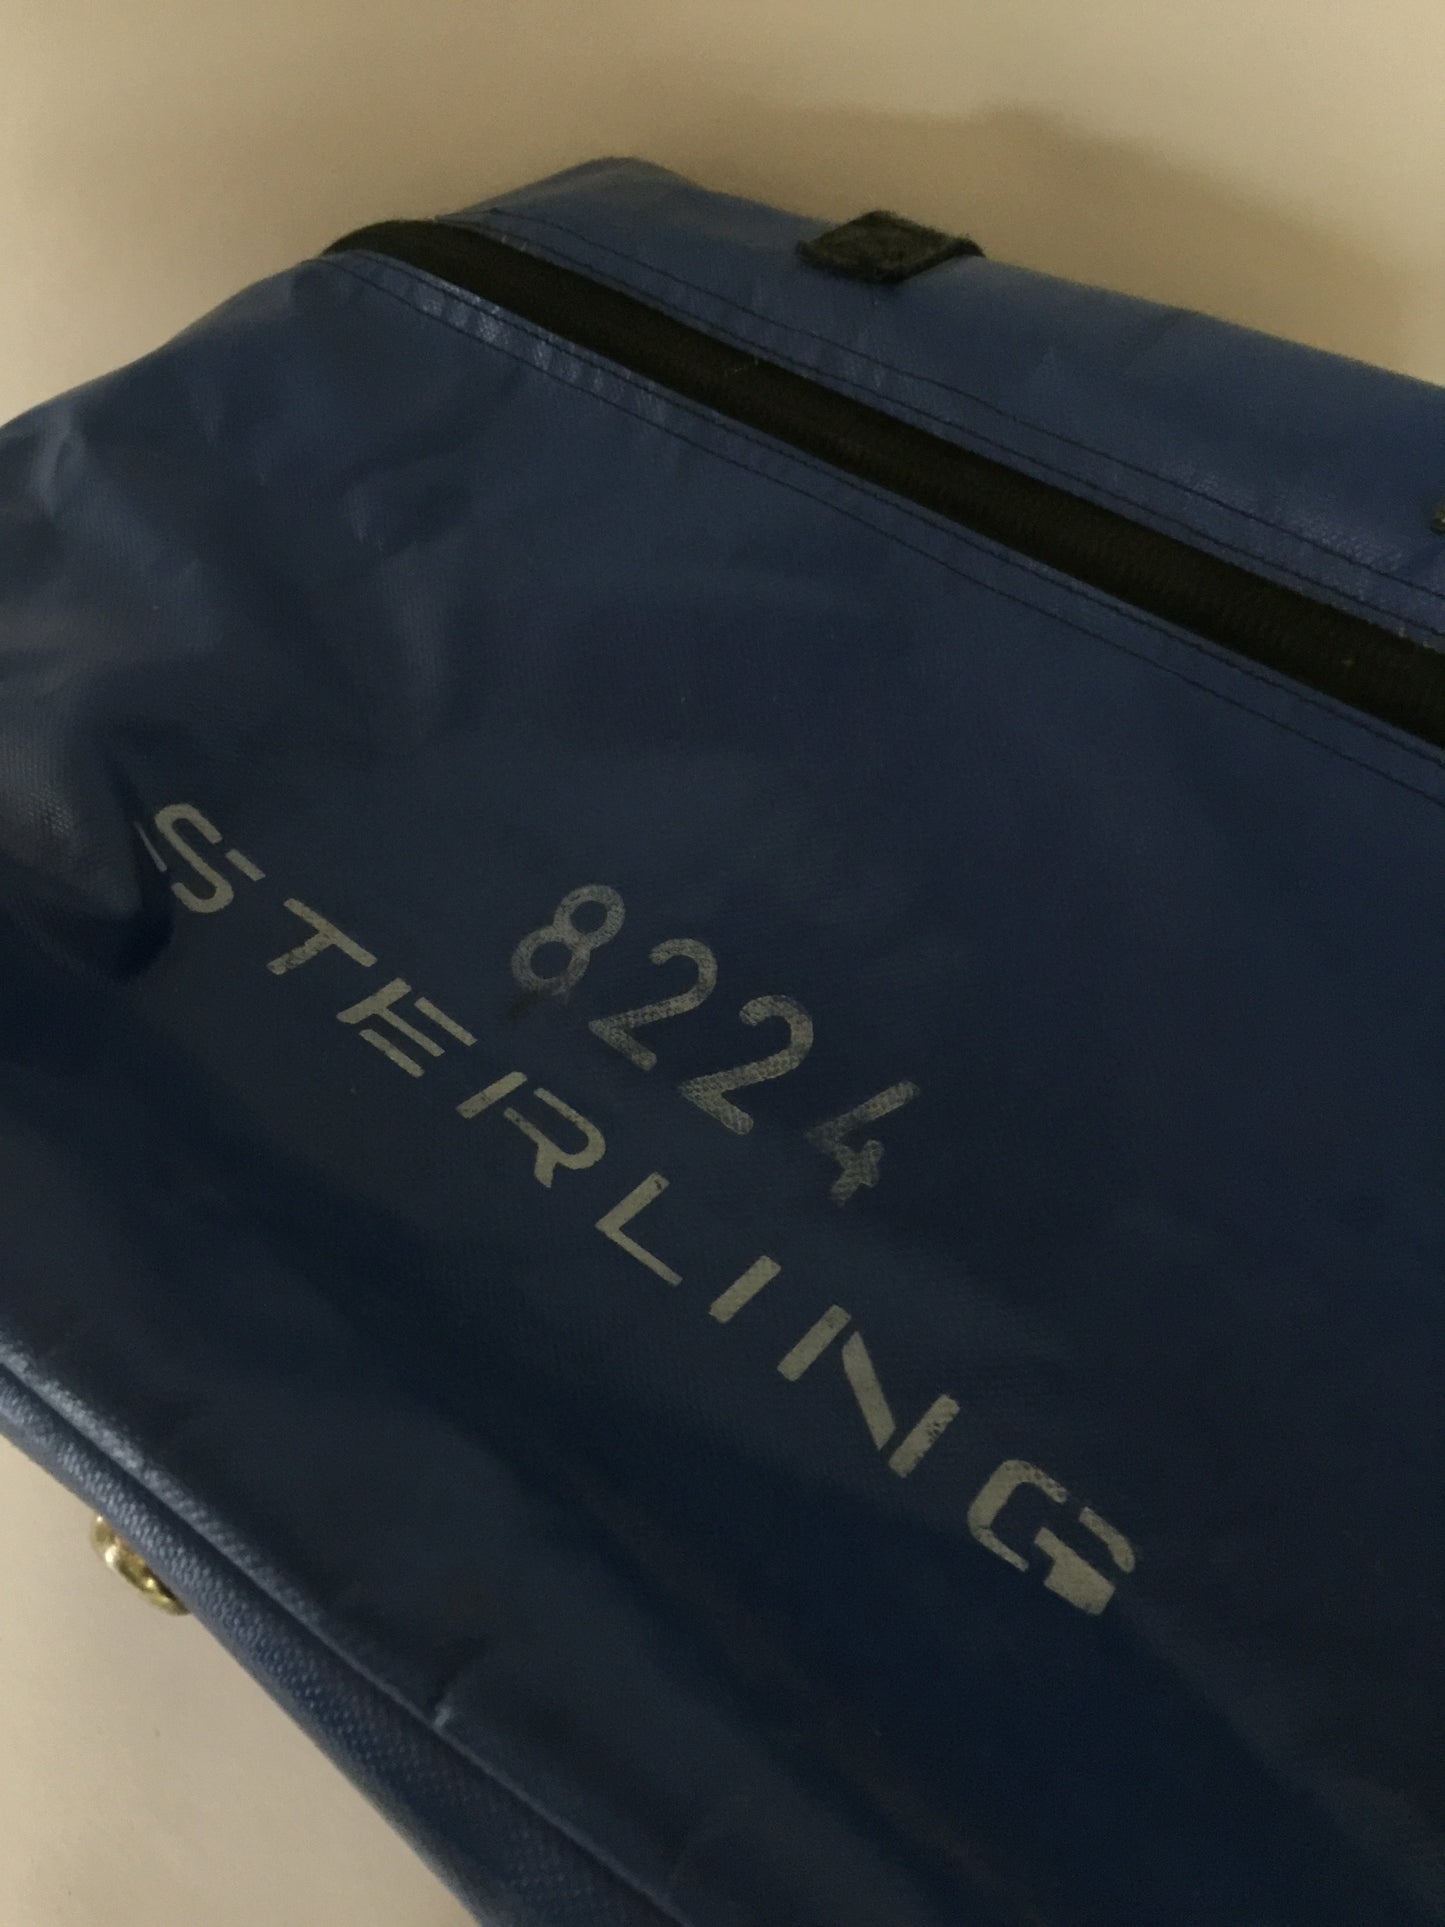 Bezaubernde Siegeltasche von Sterlingfly